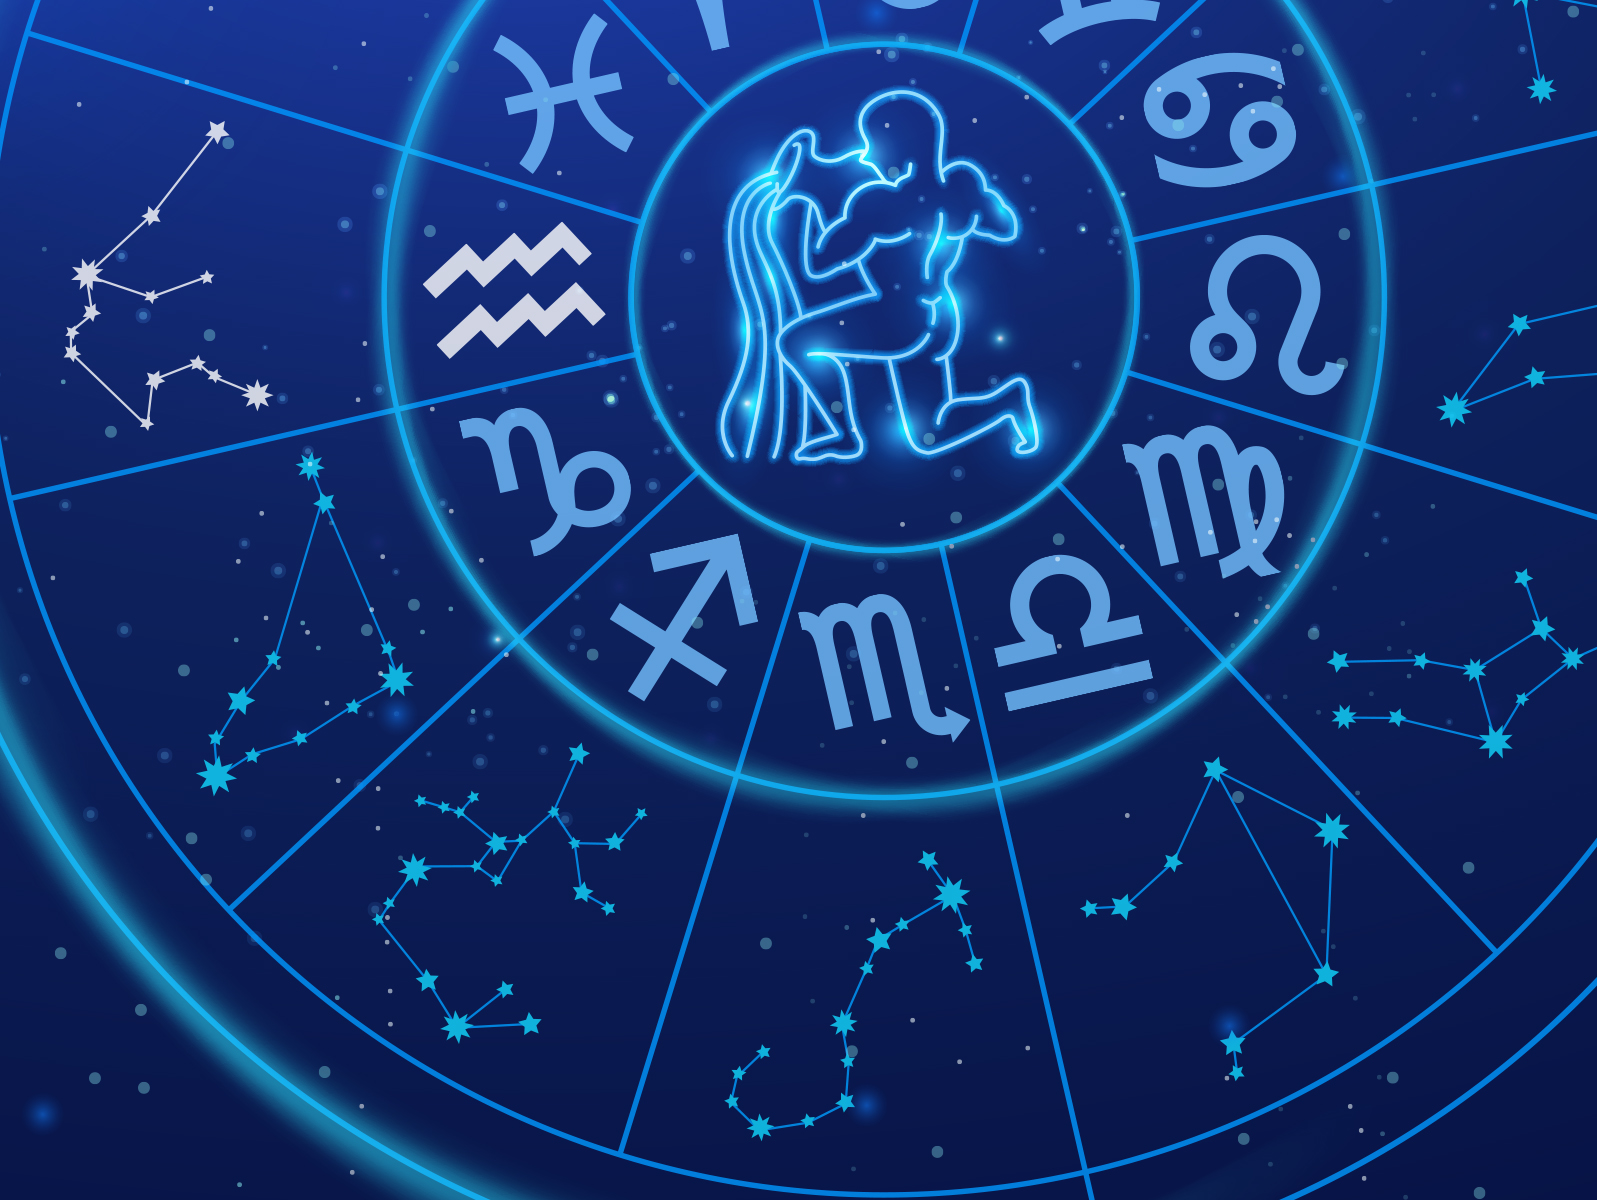 January 20th Birthday - Zodiac Sign